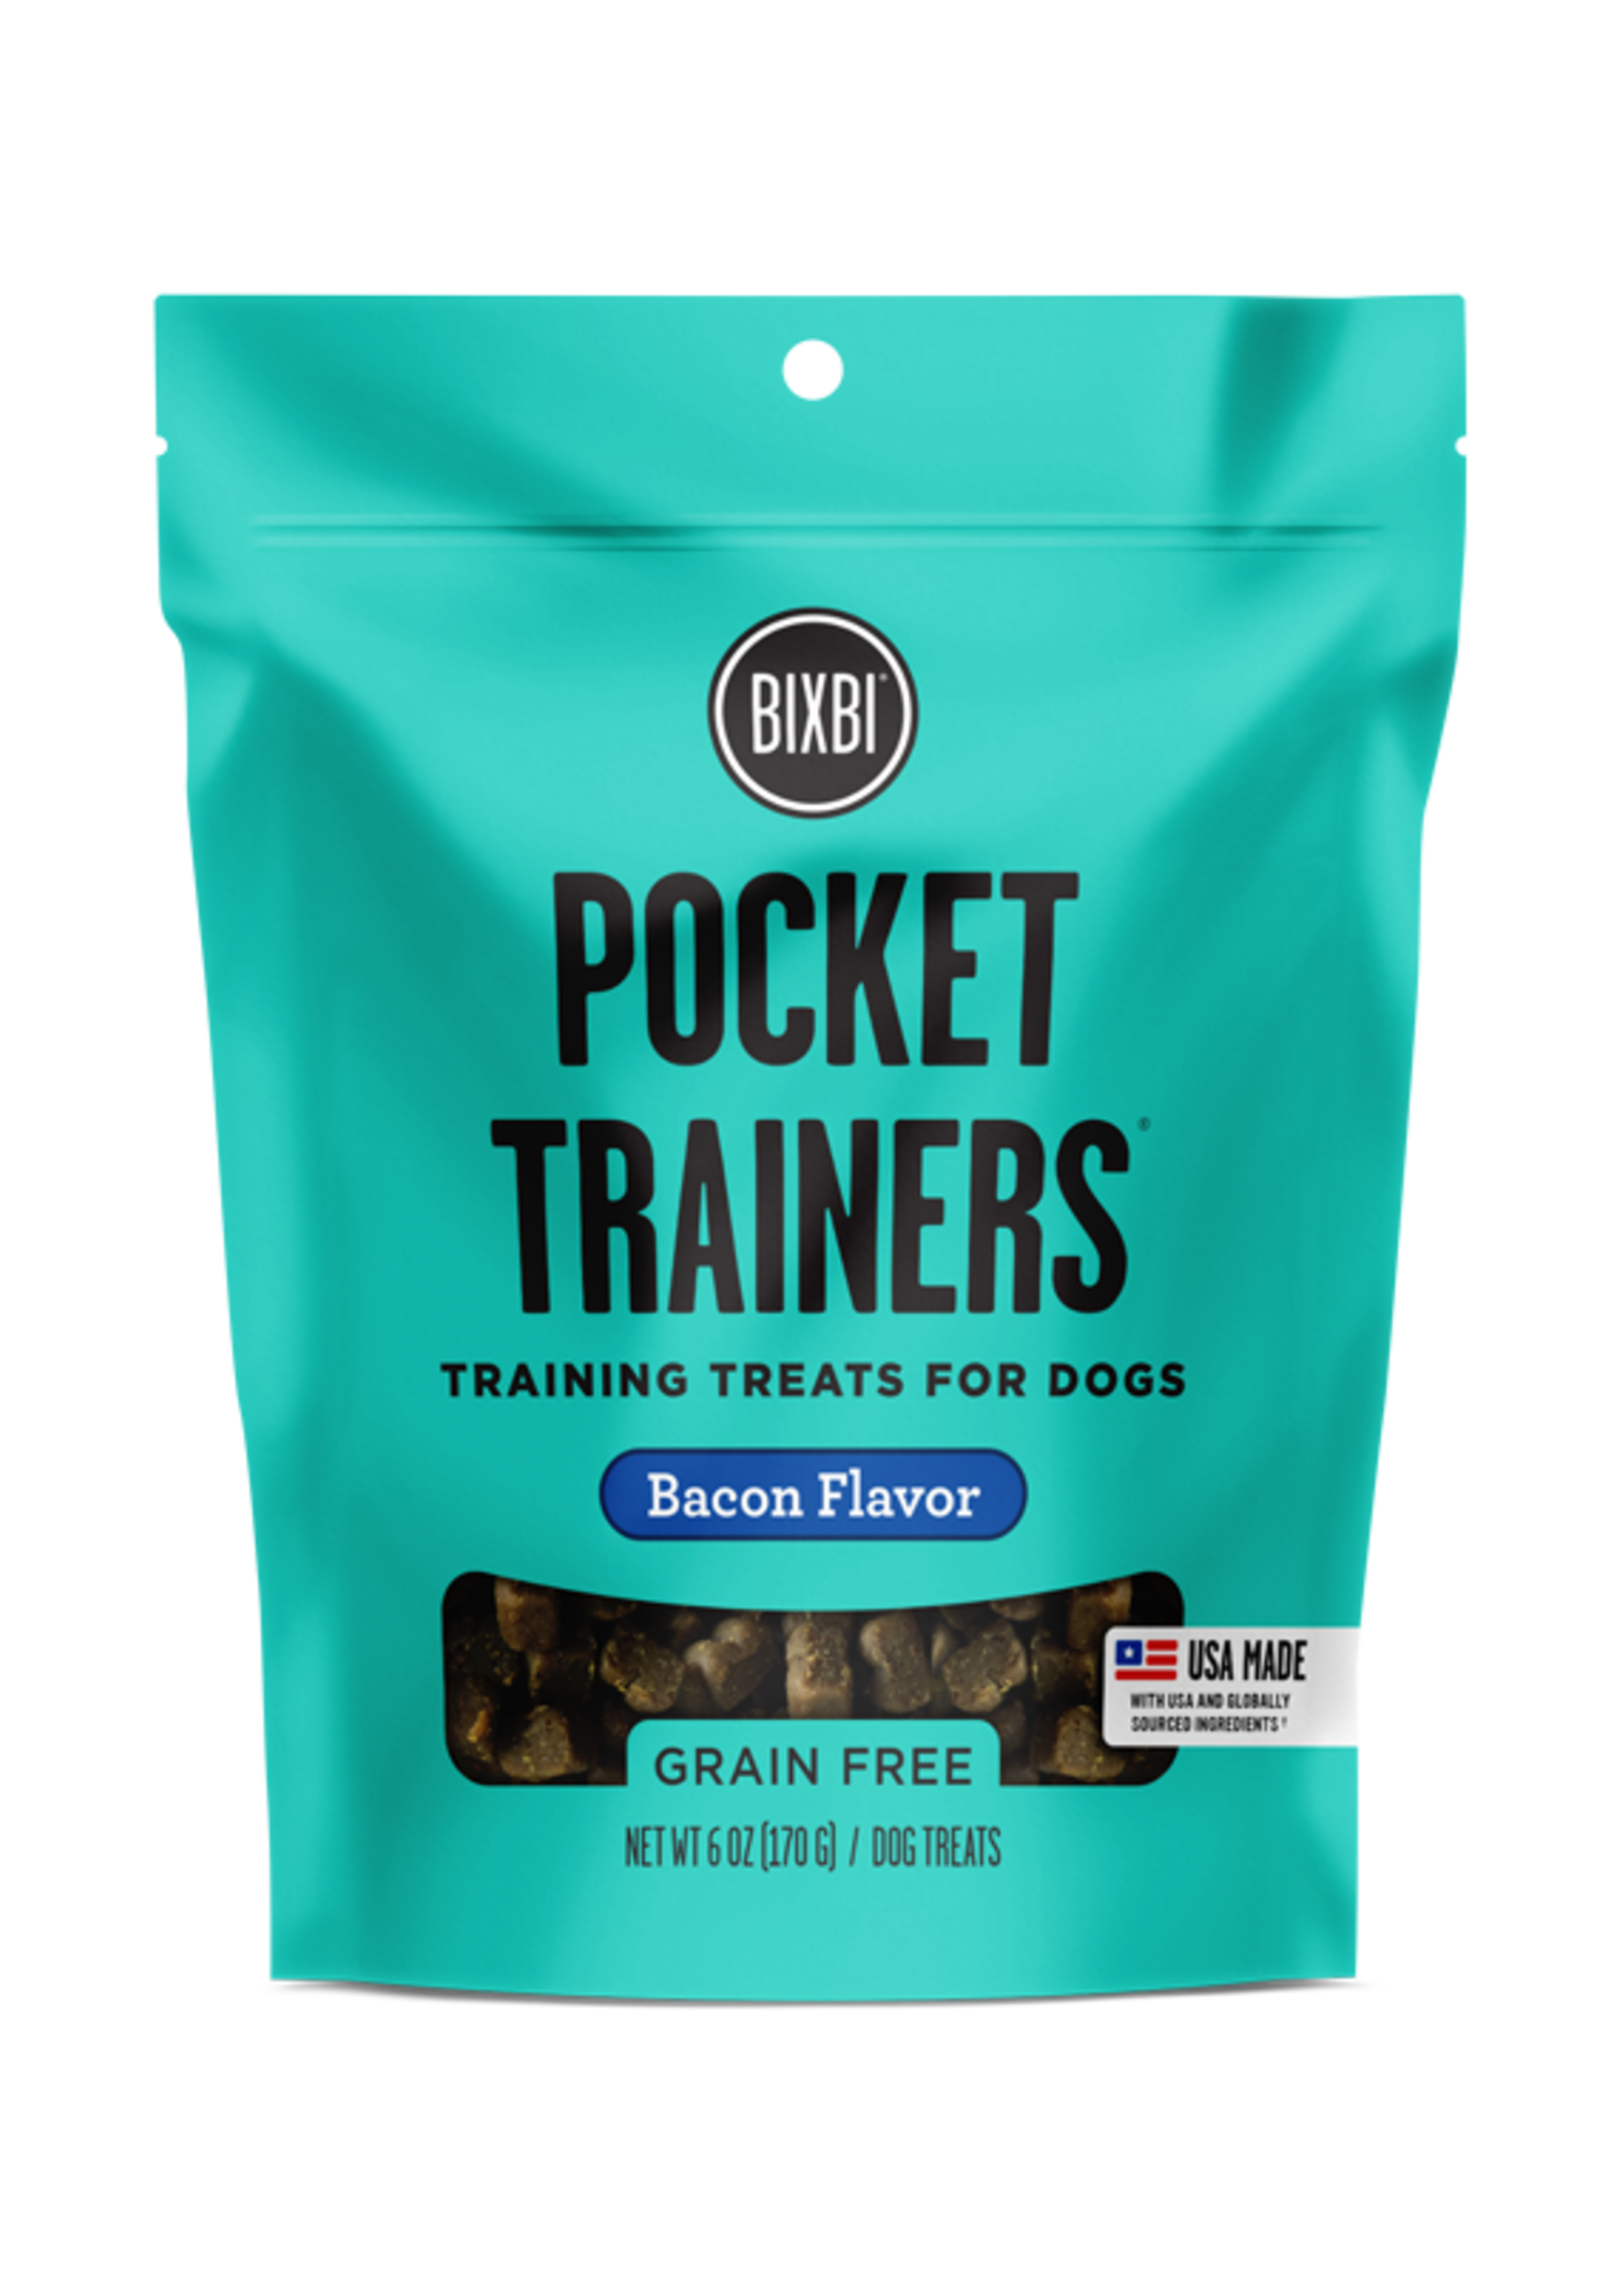 Bixbi Bixbi Pocket Trainers Bacon Flavor Dog Training Treats 6-oz